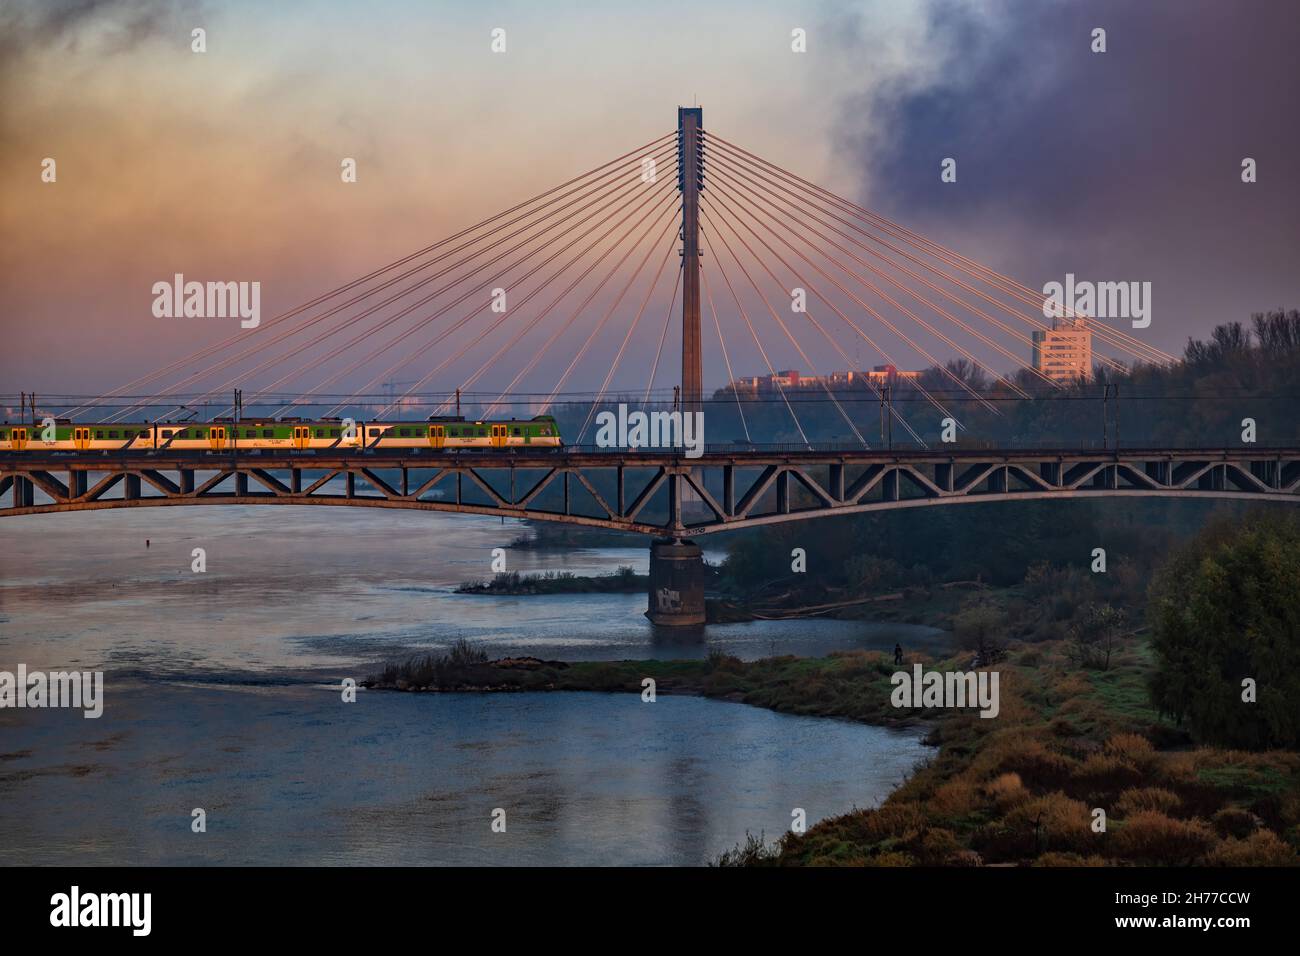 Aube par la Vistule (Wisła) dans la ville de Varsovie en Pologne, tôt le matin avec le brouillard passant et train sur le pont ferroviaire Średnicowy avec Swiętokrzysk Banque D'Images